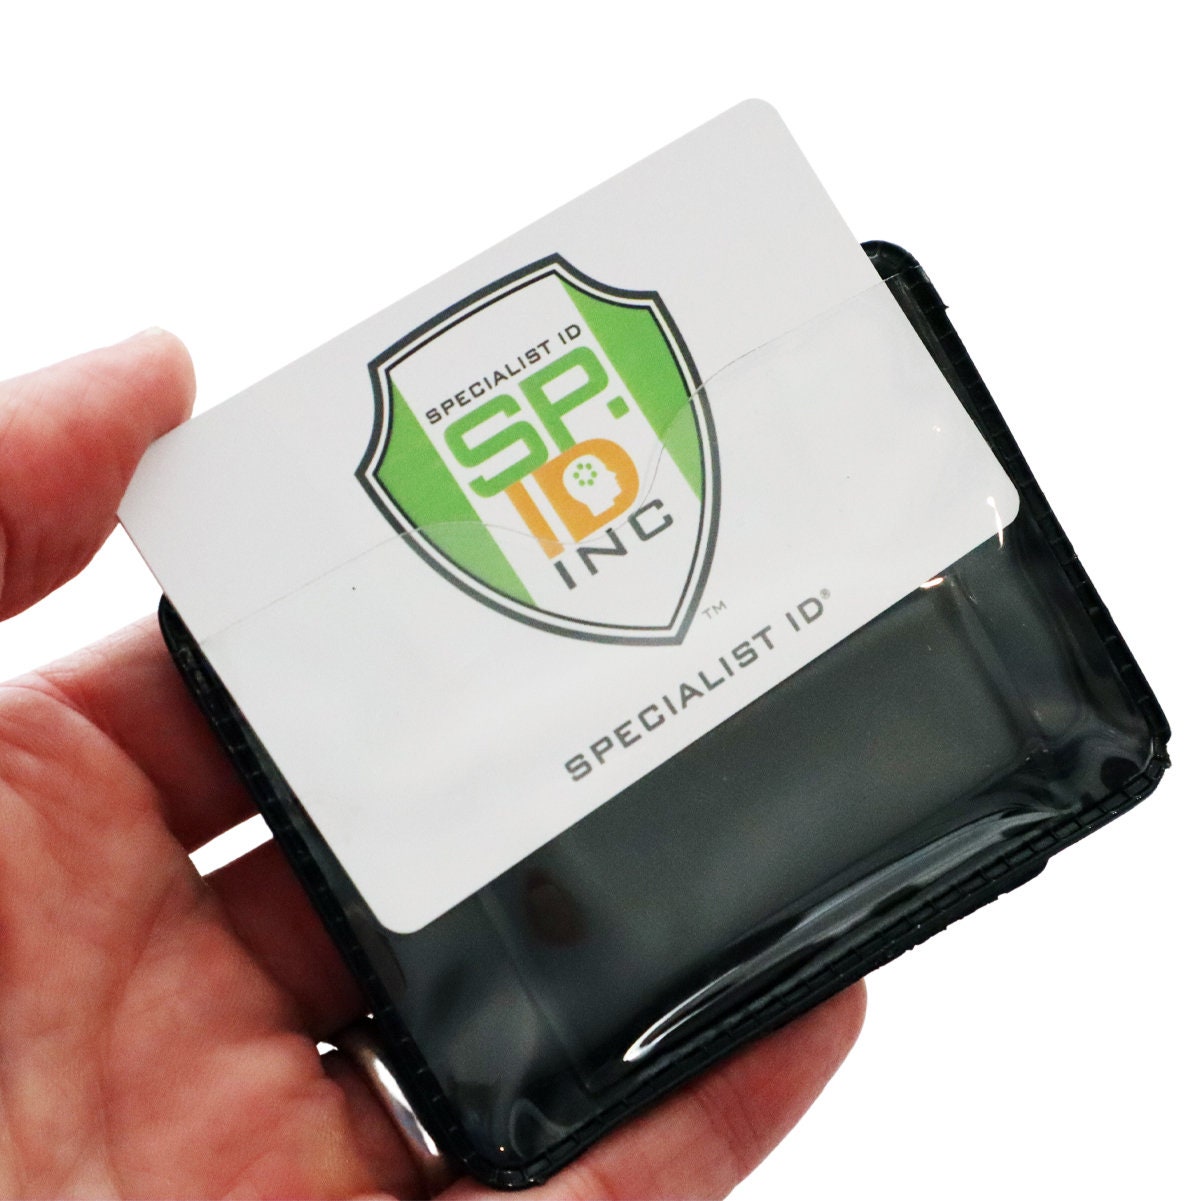 Shielded Magnetic Vertical Single Pocket Badge Holder Government Size 9788  - J. O'Brien